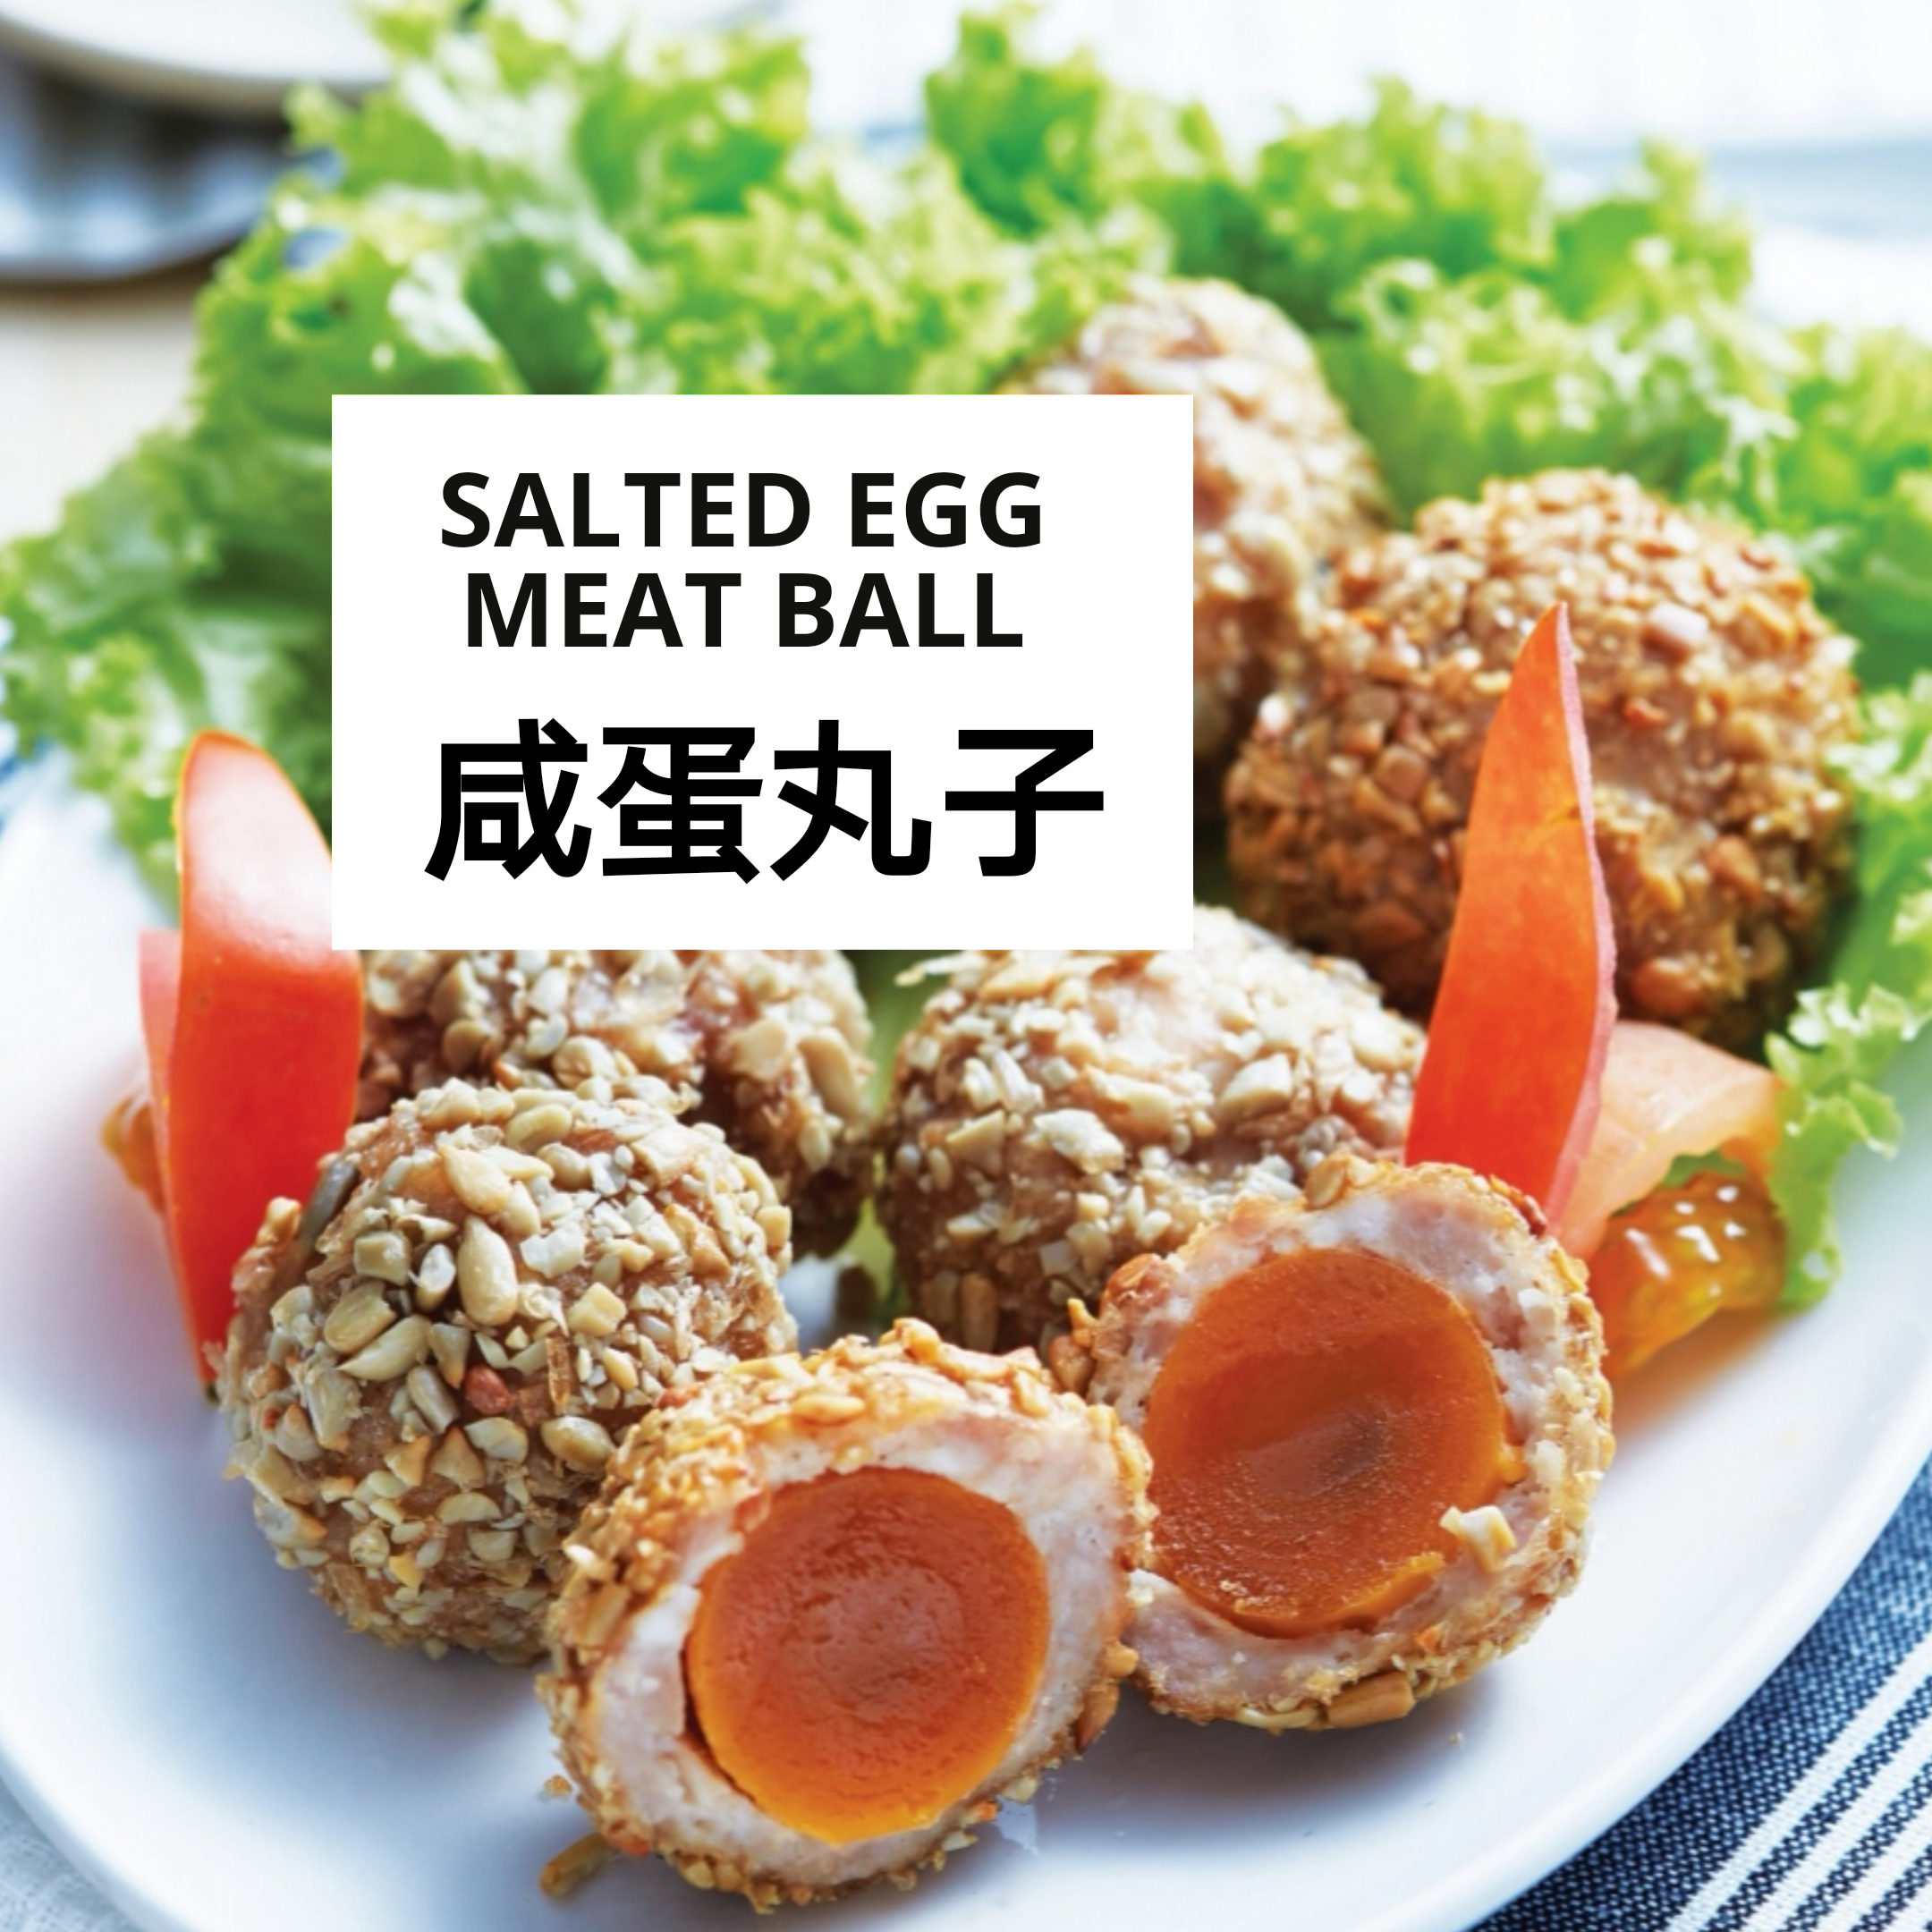 咸蛋丸子 salted egg meat ball